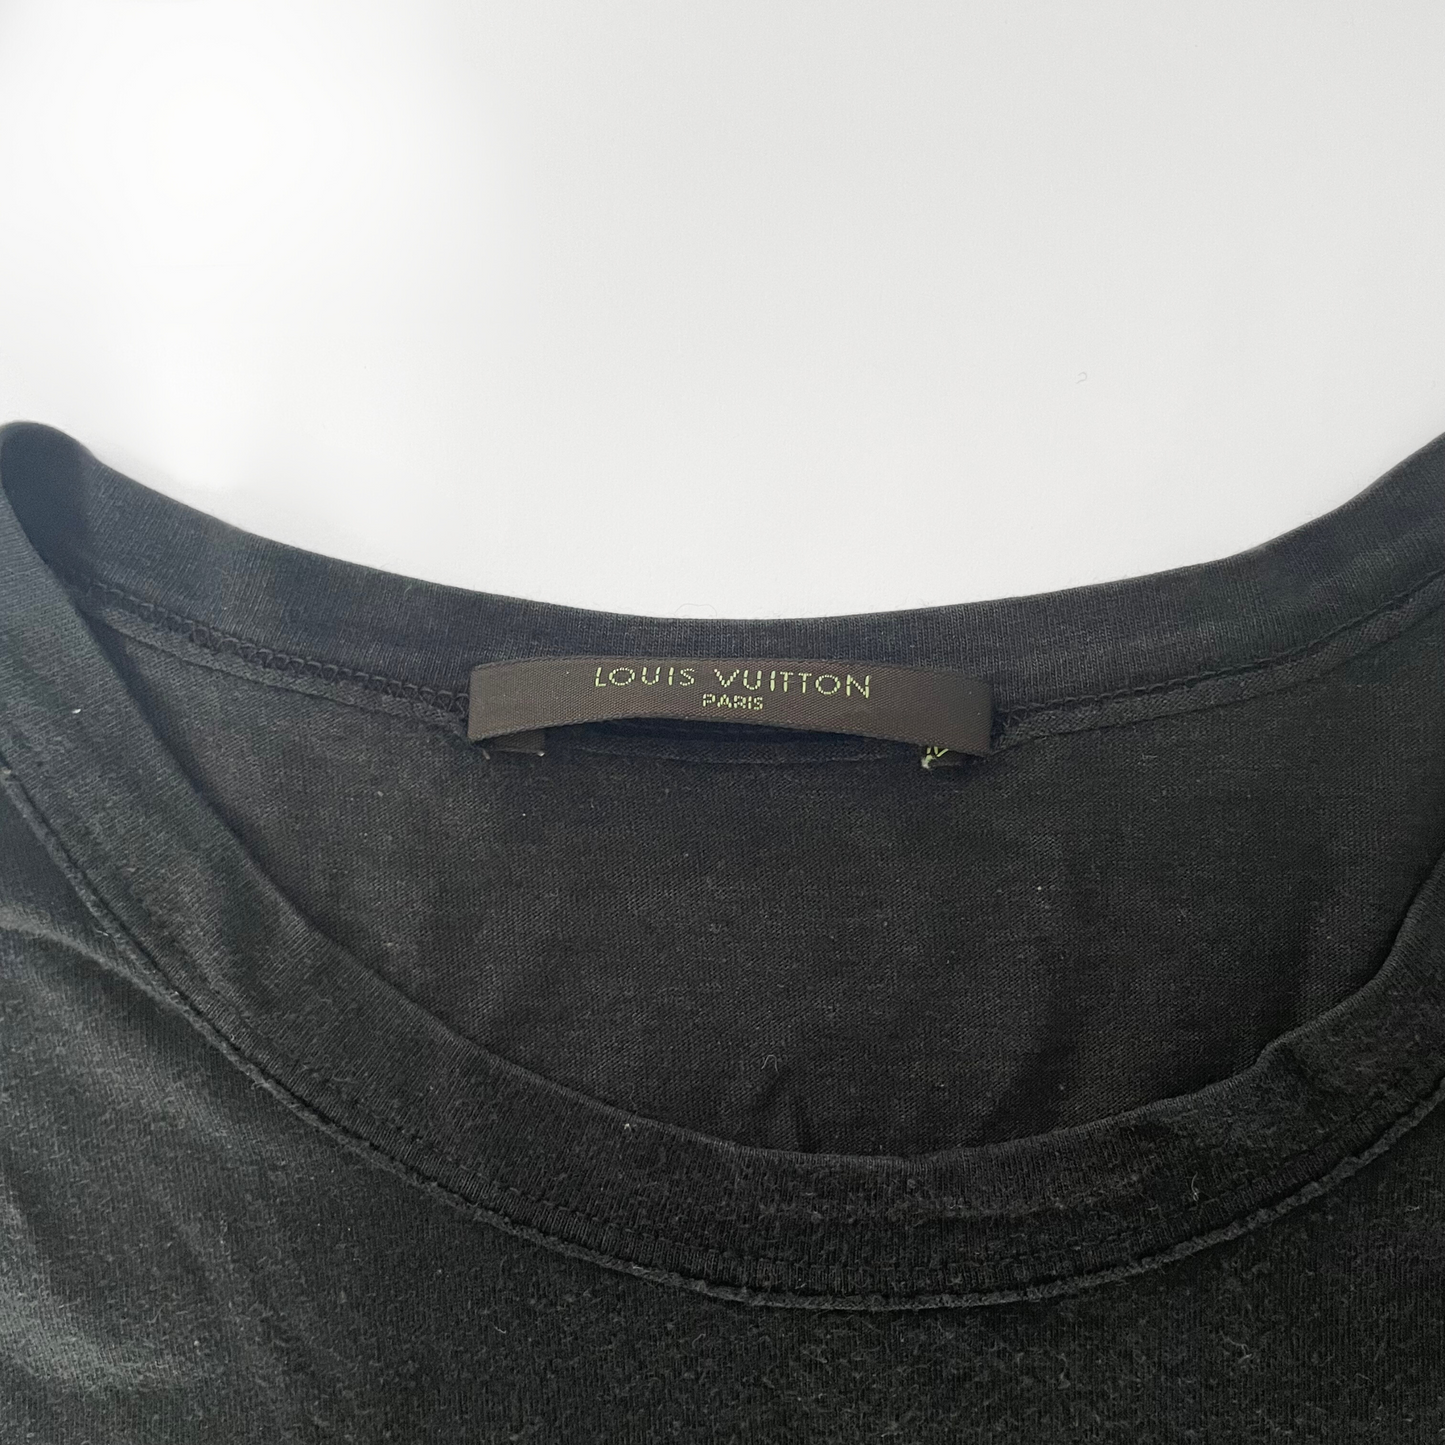 Louis Vuitton Louis Vuitton T-shirt Coton Modal Mix - Vêtements - Etoile Luxury Vintage